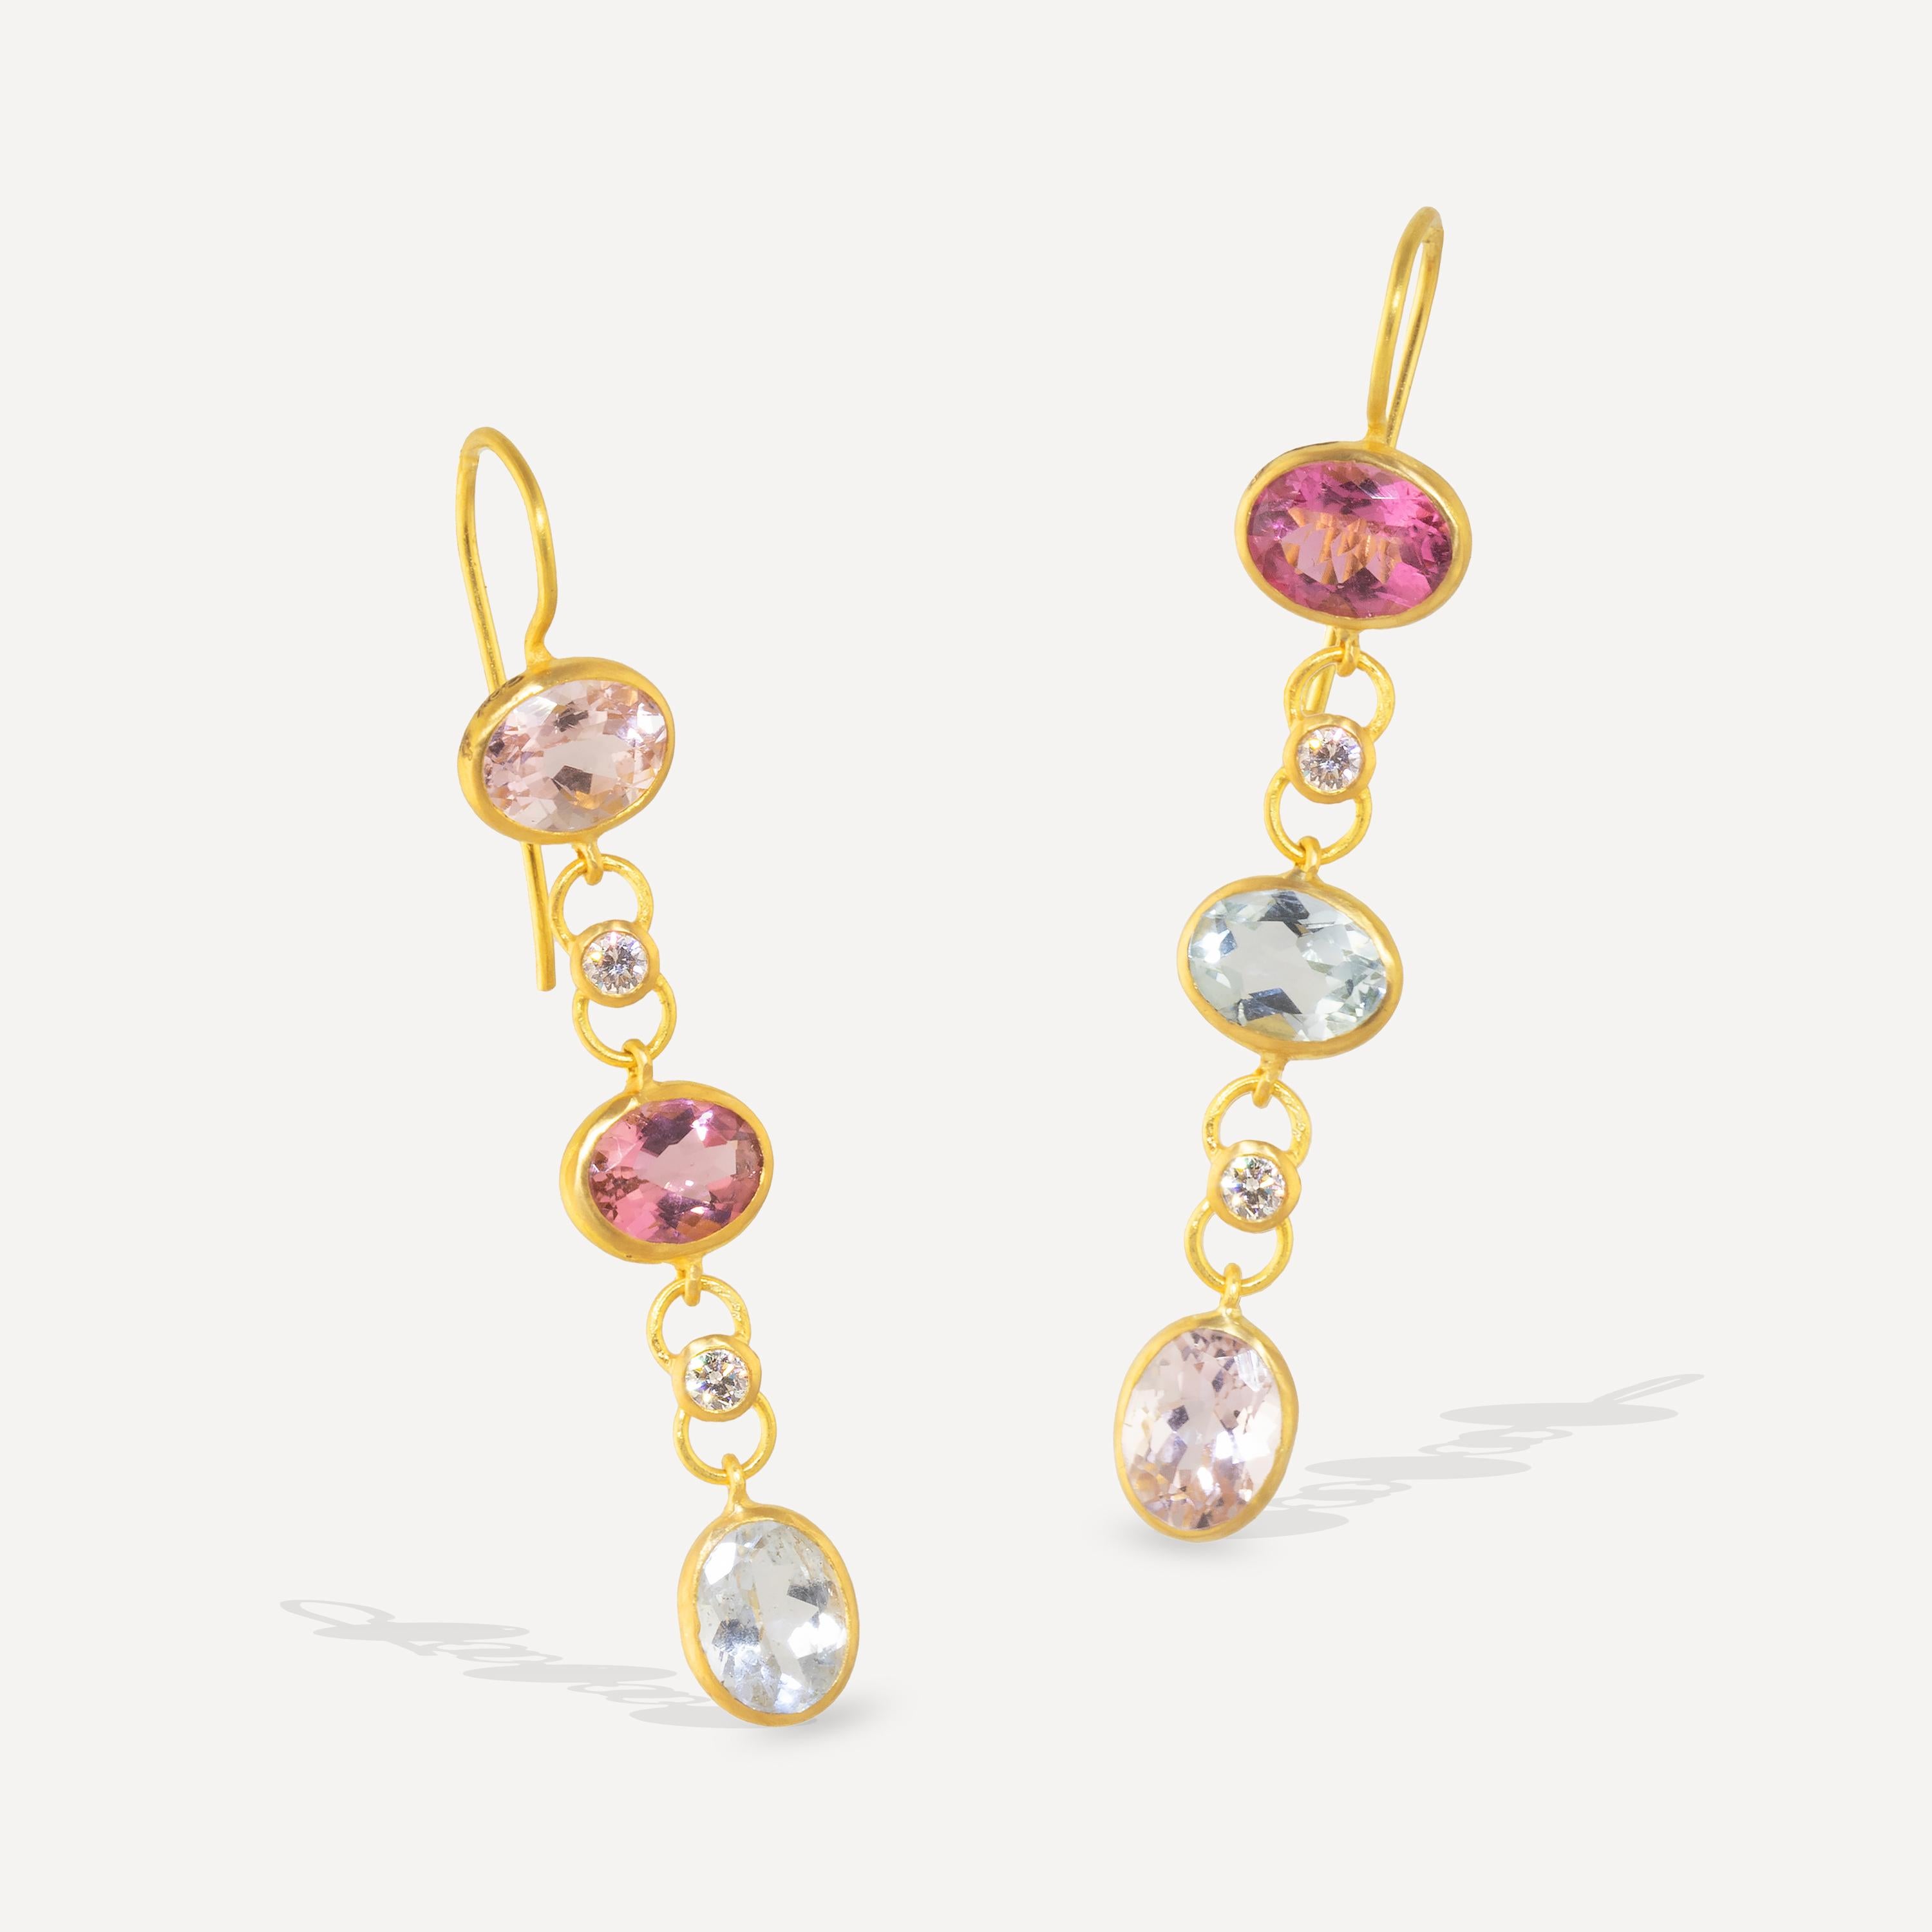 Tourmaline multicolore et  Les diamants sont mis en valeur dans ces boucles d'oreilles spectaculaires, fabriquées à la main dans notre atelier de Jaipur en or 22k.
Avec 8,4 carats de tourmalines pastel multicolores et .40carats de diamants VVS